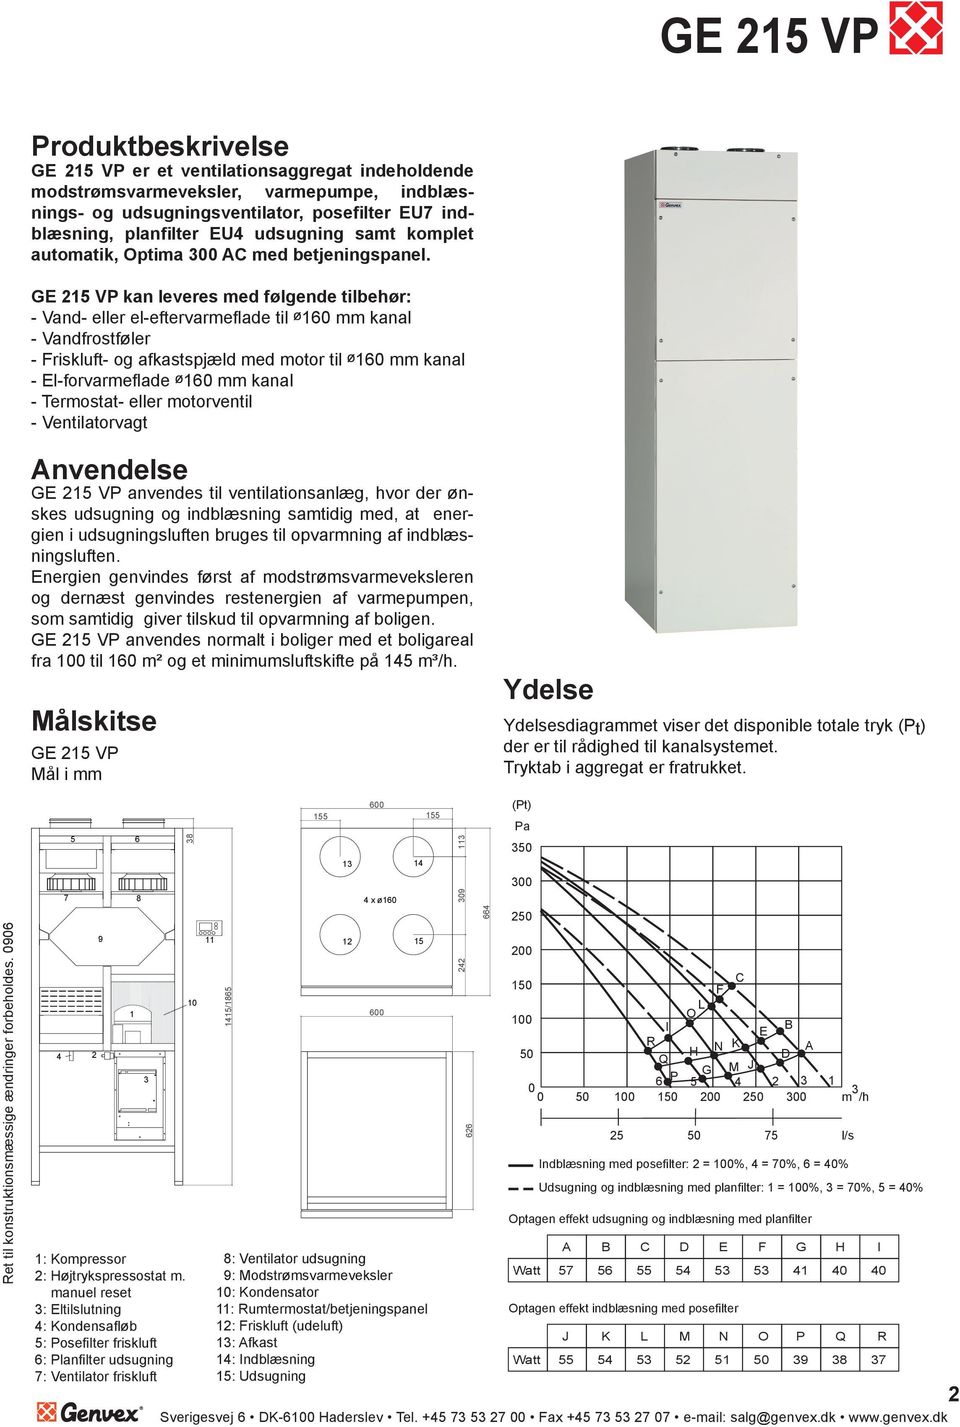 GE 25 VP kan leveres med følgende tilbehør: - Vand- eller el-eftervarmefl ade til ø 0 mm kanal - Vandfrostføler - Friskluft- og afkastspjæld med motor til ø 0 mm kanal - El-forvarmefl ade ø 0 mm